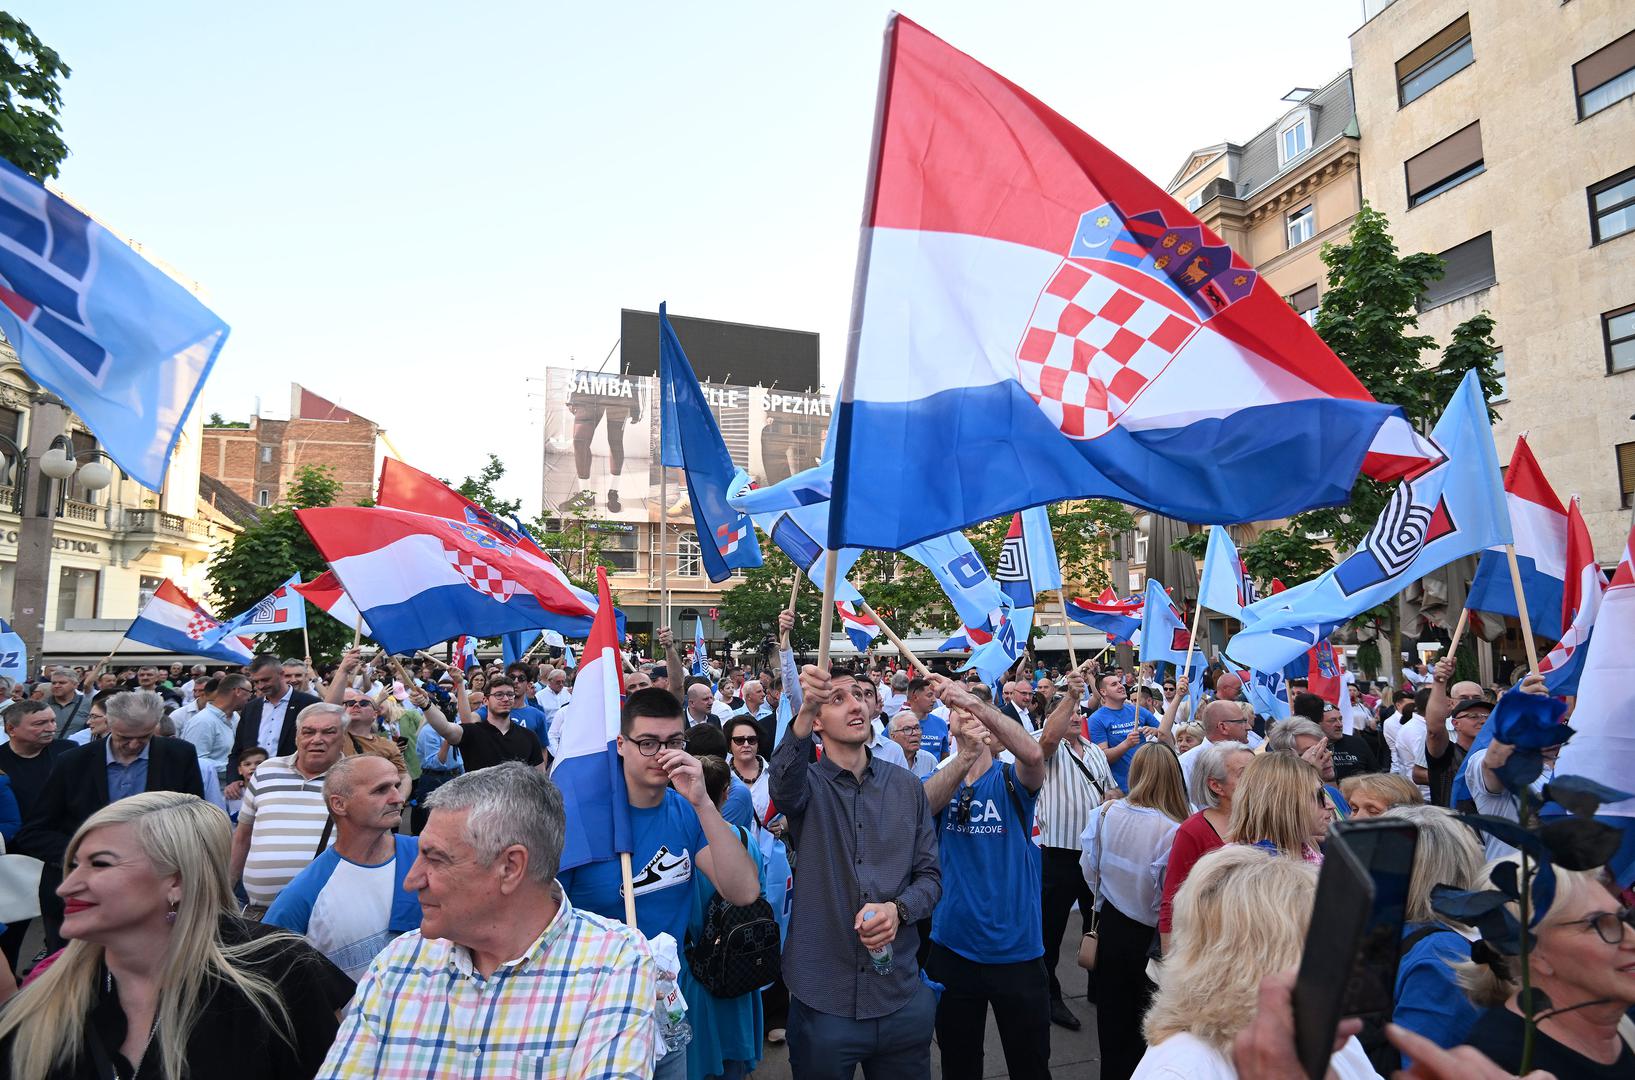 Upravo ta ideja, slobodne Hrvatske, naše države, našeg gospodarstva, u kojima se poštuje zakon, u kojima se poštuje Ustav i vladavina prava, to je Hrvatska kakvu mi vidimo, kakvu stvaramo i kakva će ostati nakon 17. travnja, poručio je Plenković.